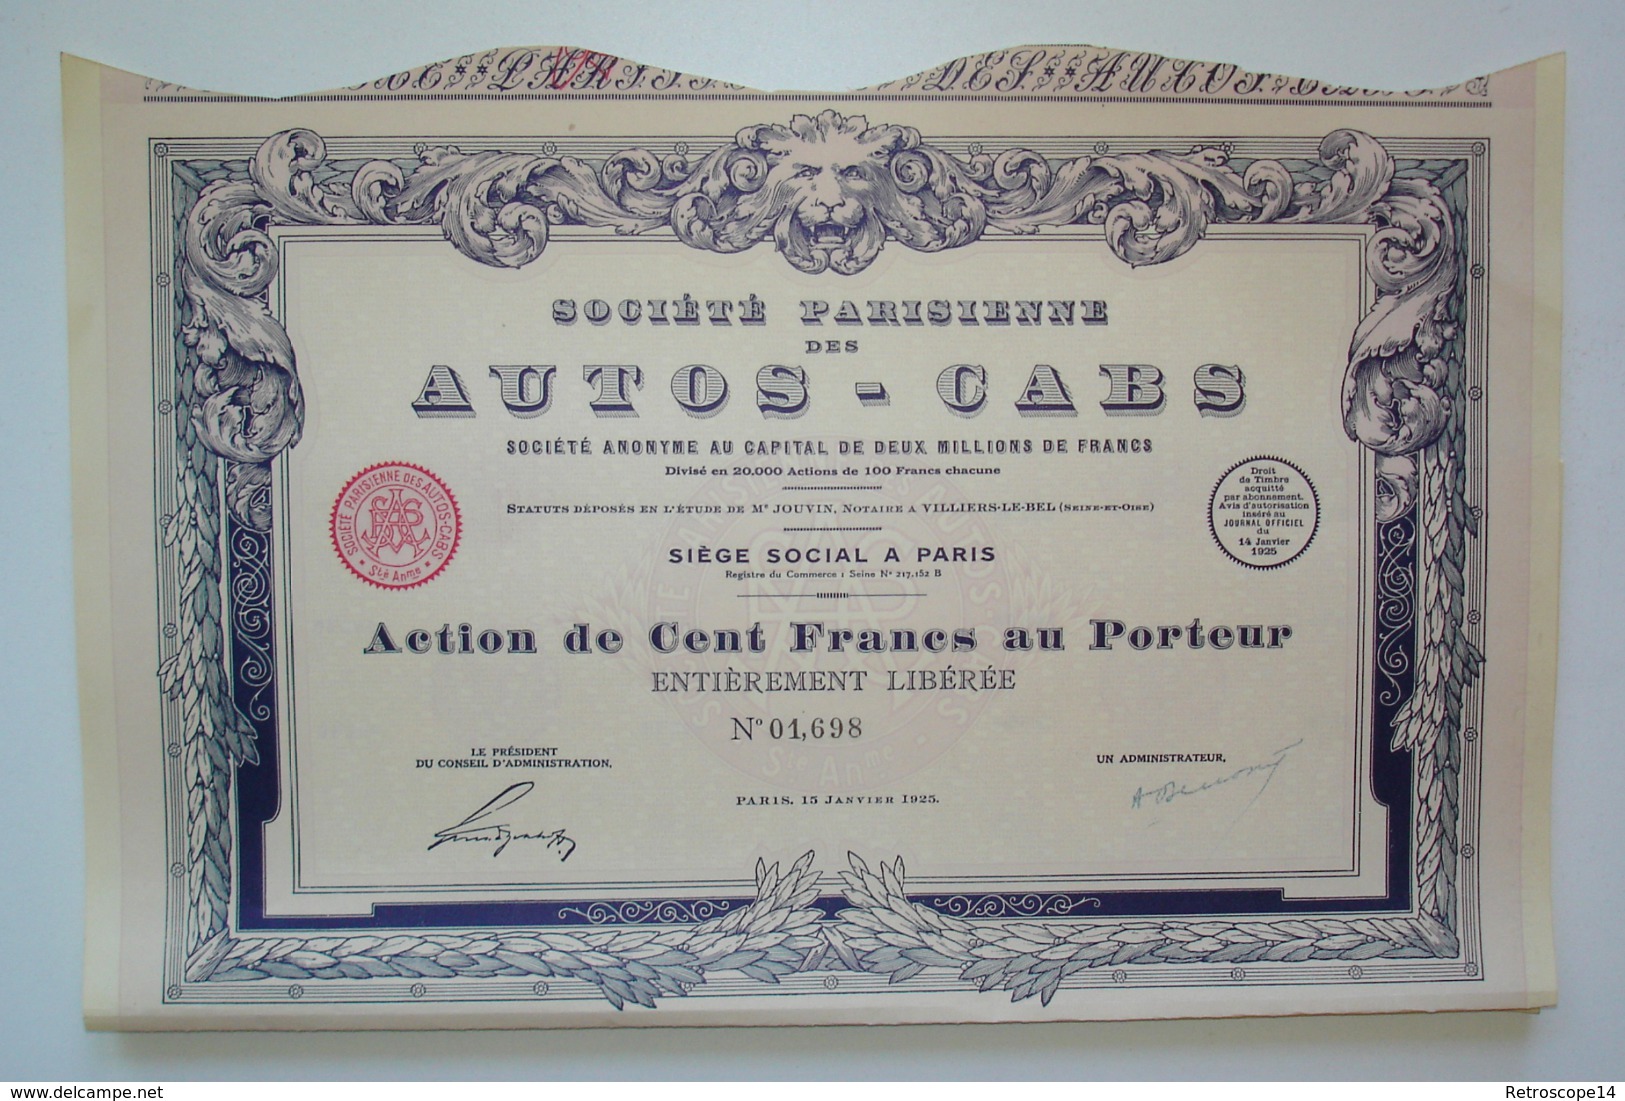 RARE. 1925. SOCIÉTÉ DES AUTOS-CABS Avec Coupons. ART DÉCO. - Automobile